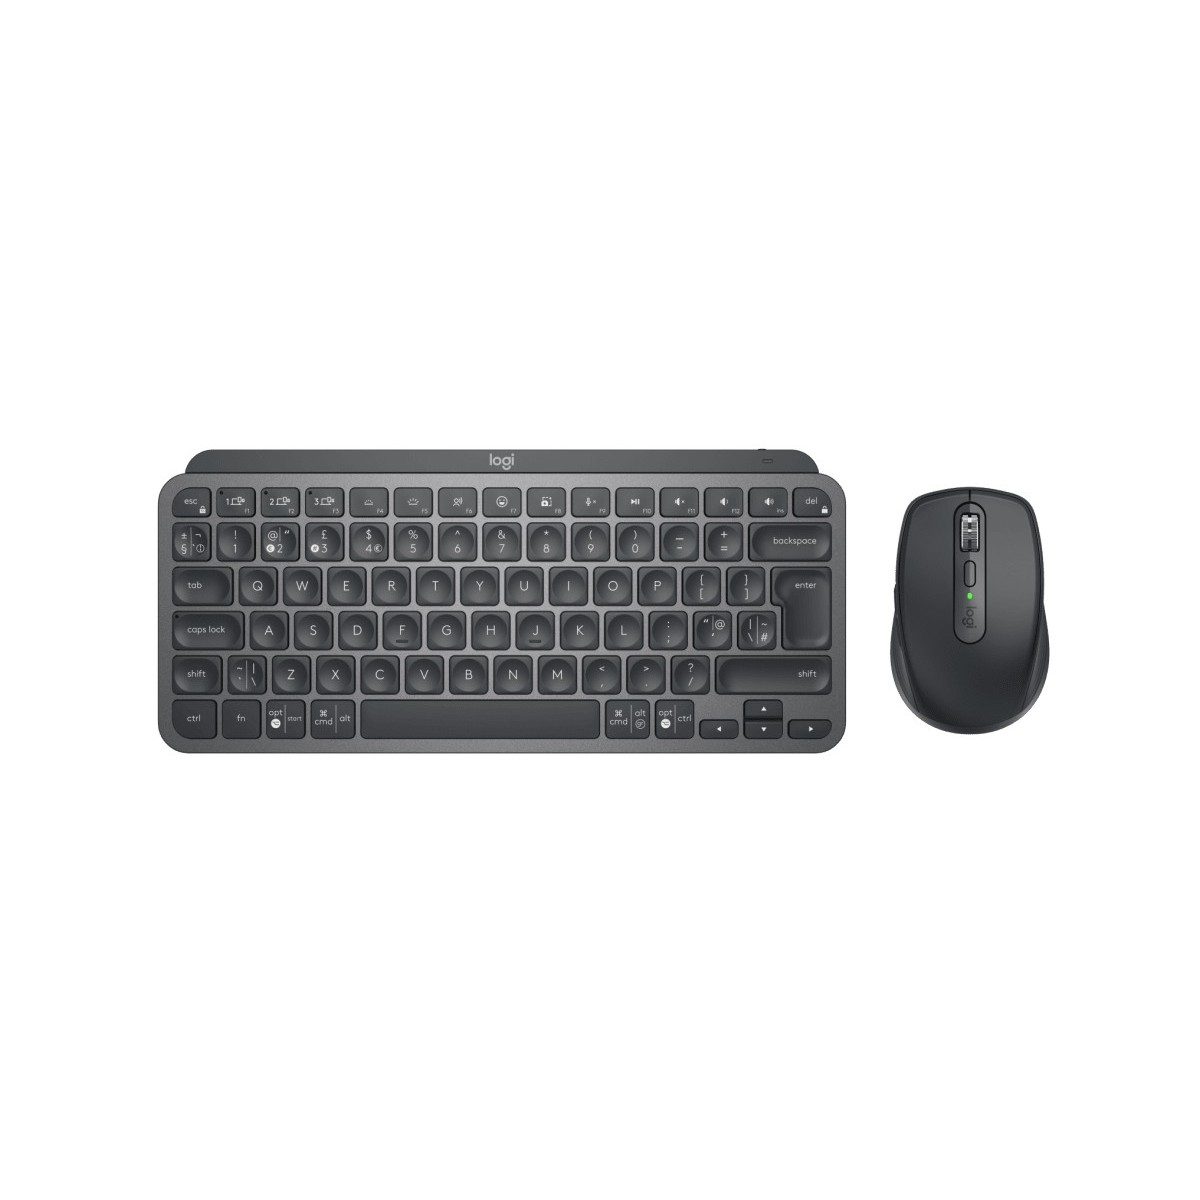 Logitech MX 920-011060 - Keyboard